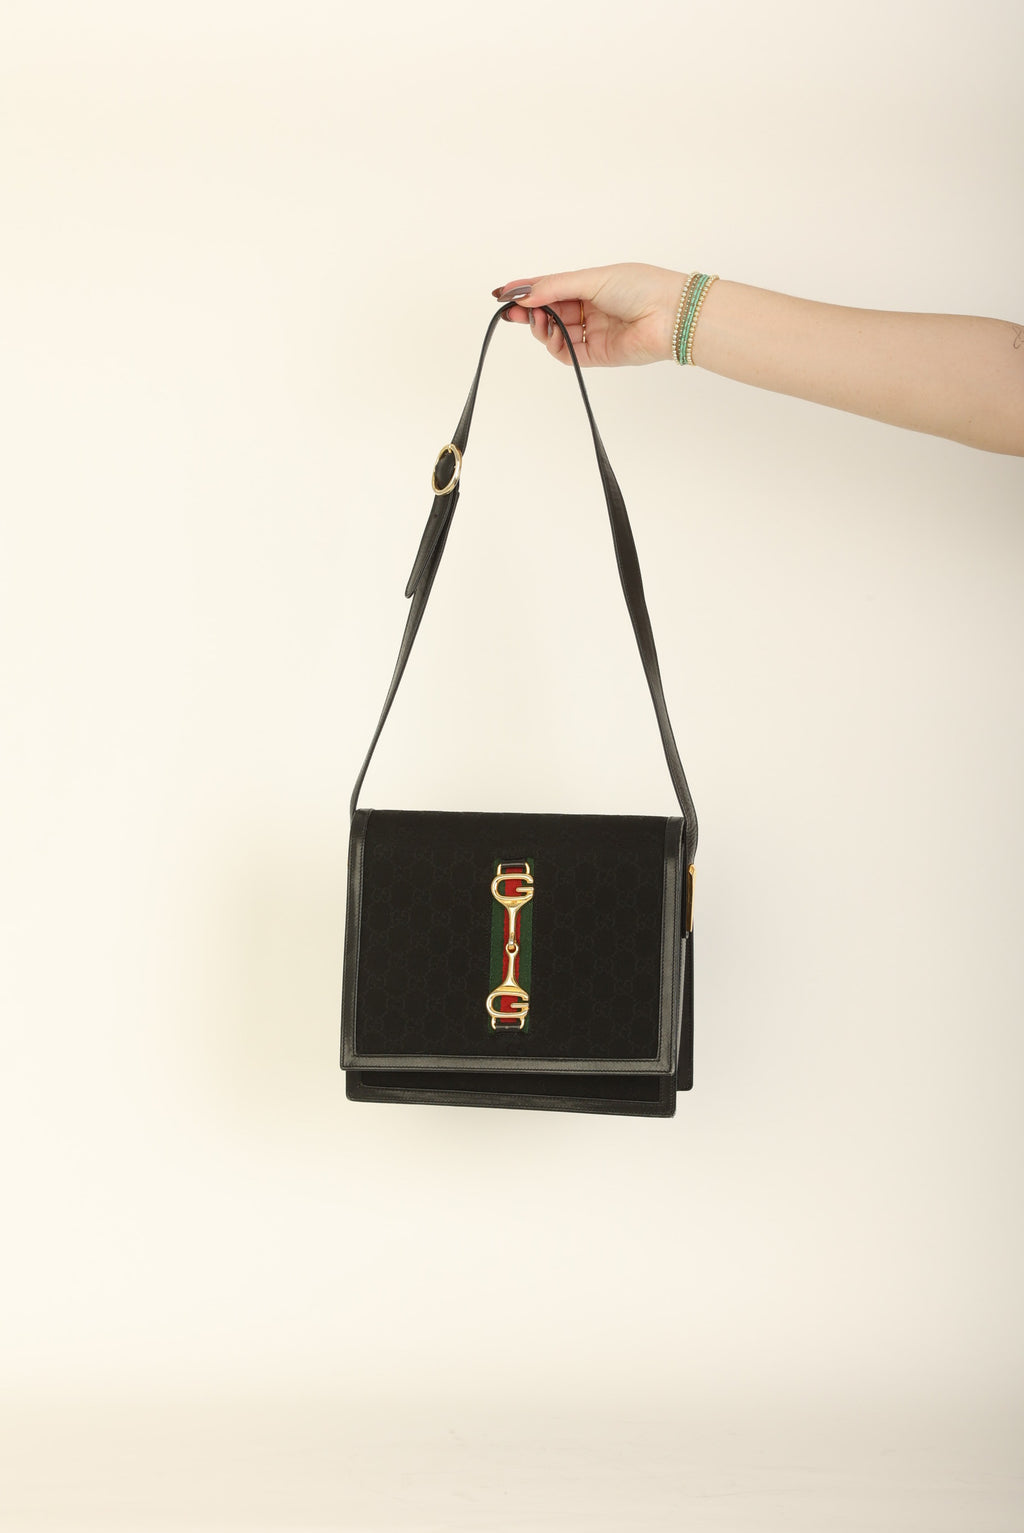 vintage designer bags > new designer handbags 💅🏼😌 new drop live on